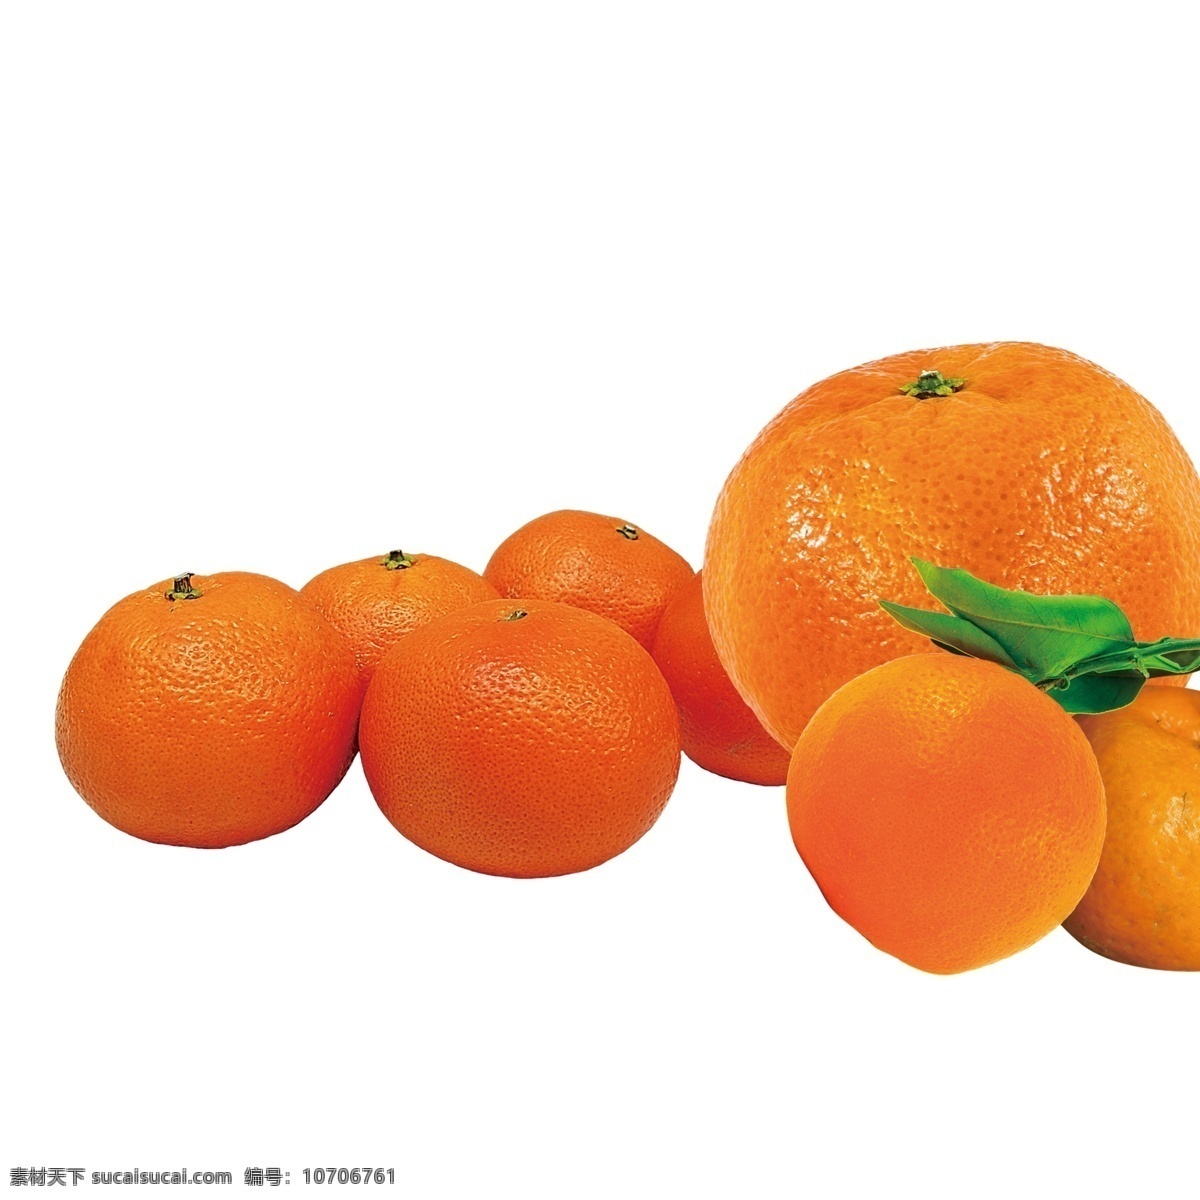 橘子 水果 素材图片 水果素材 水果包装 透明背景素材